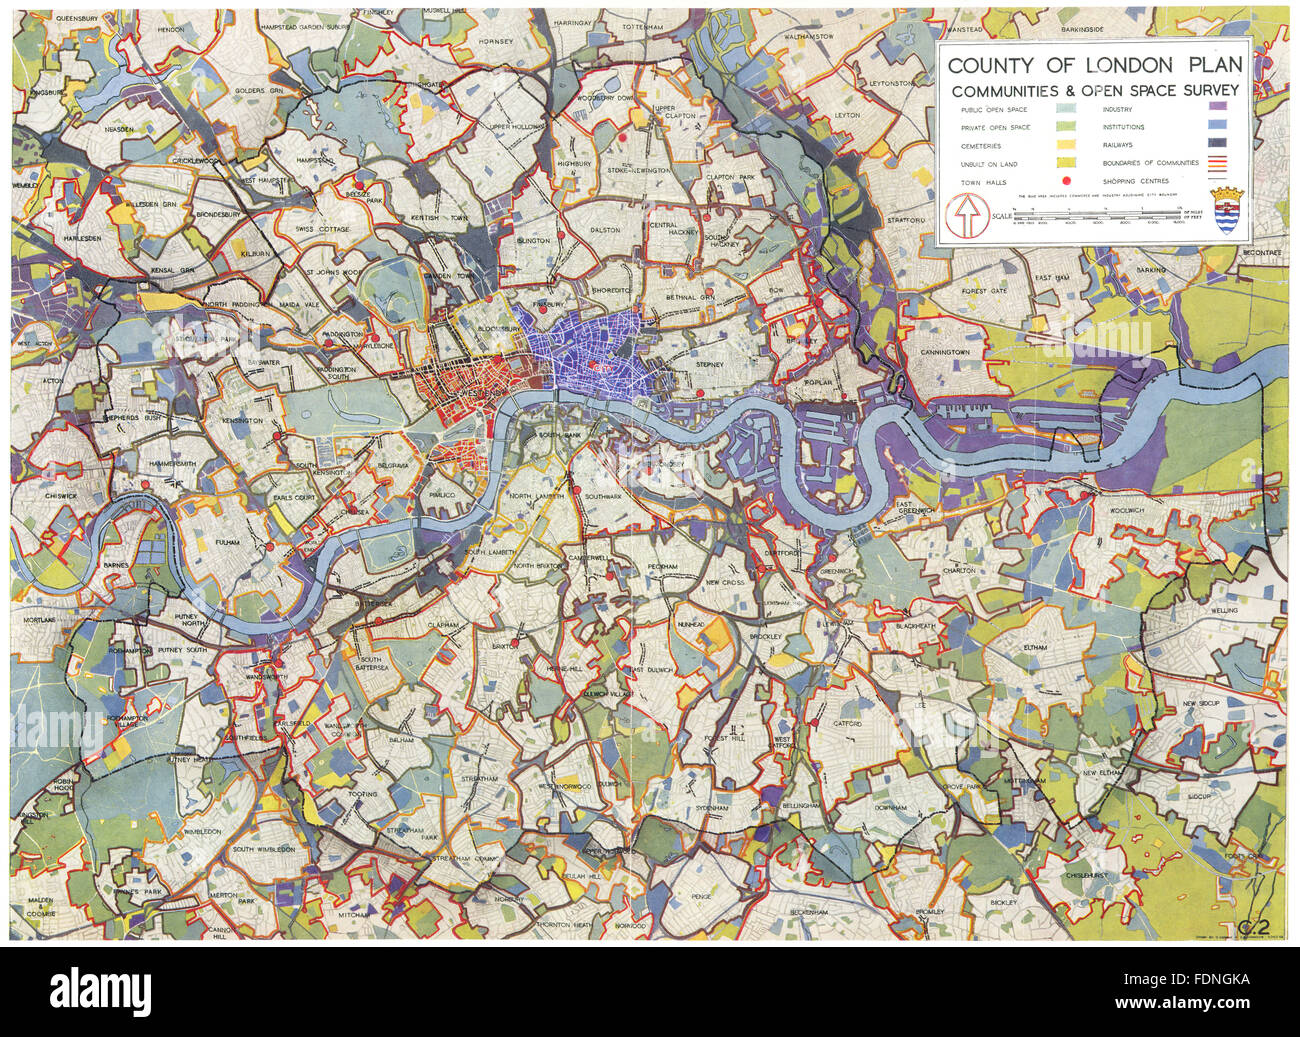 LONDON: County of London plan Gemeinden & öffnen Raum Umfrage, 1943 alte Karte Stockfoto